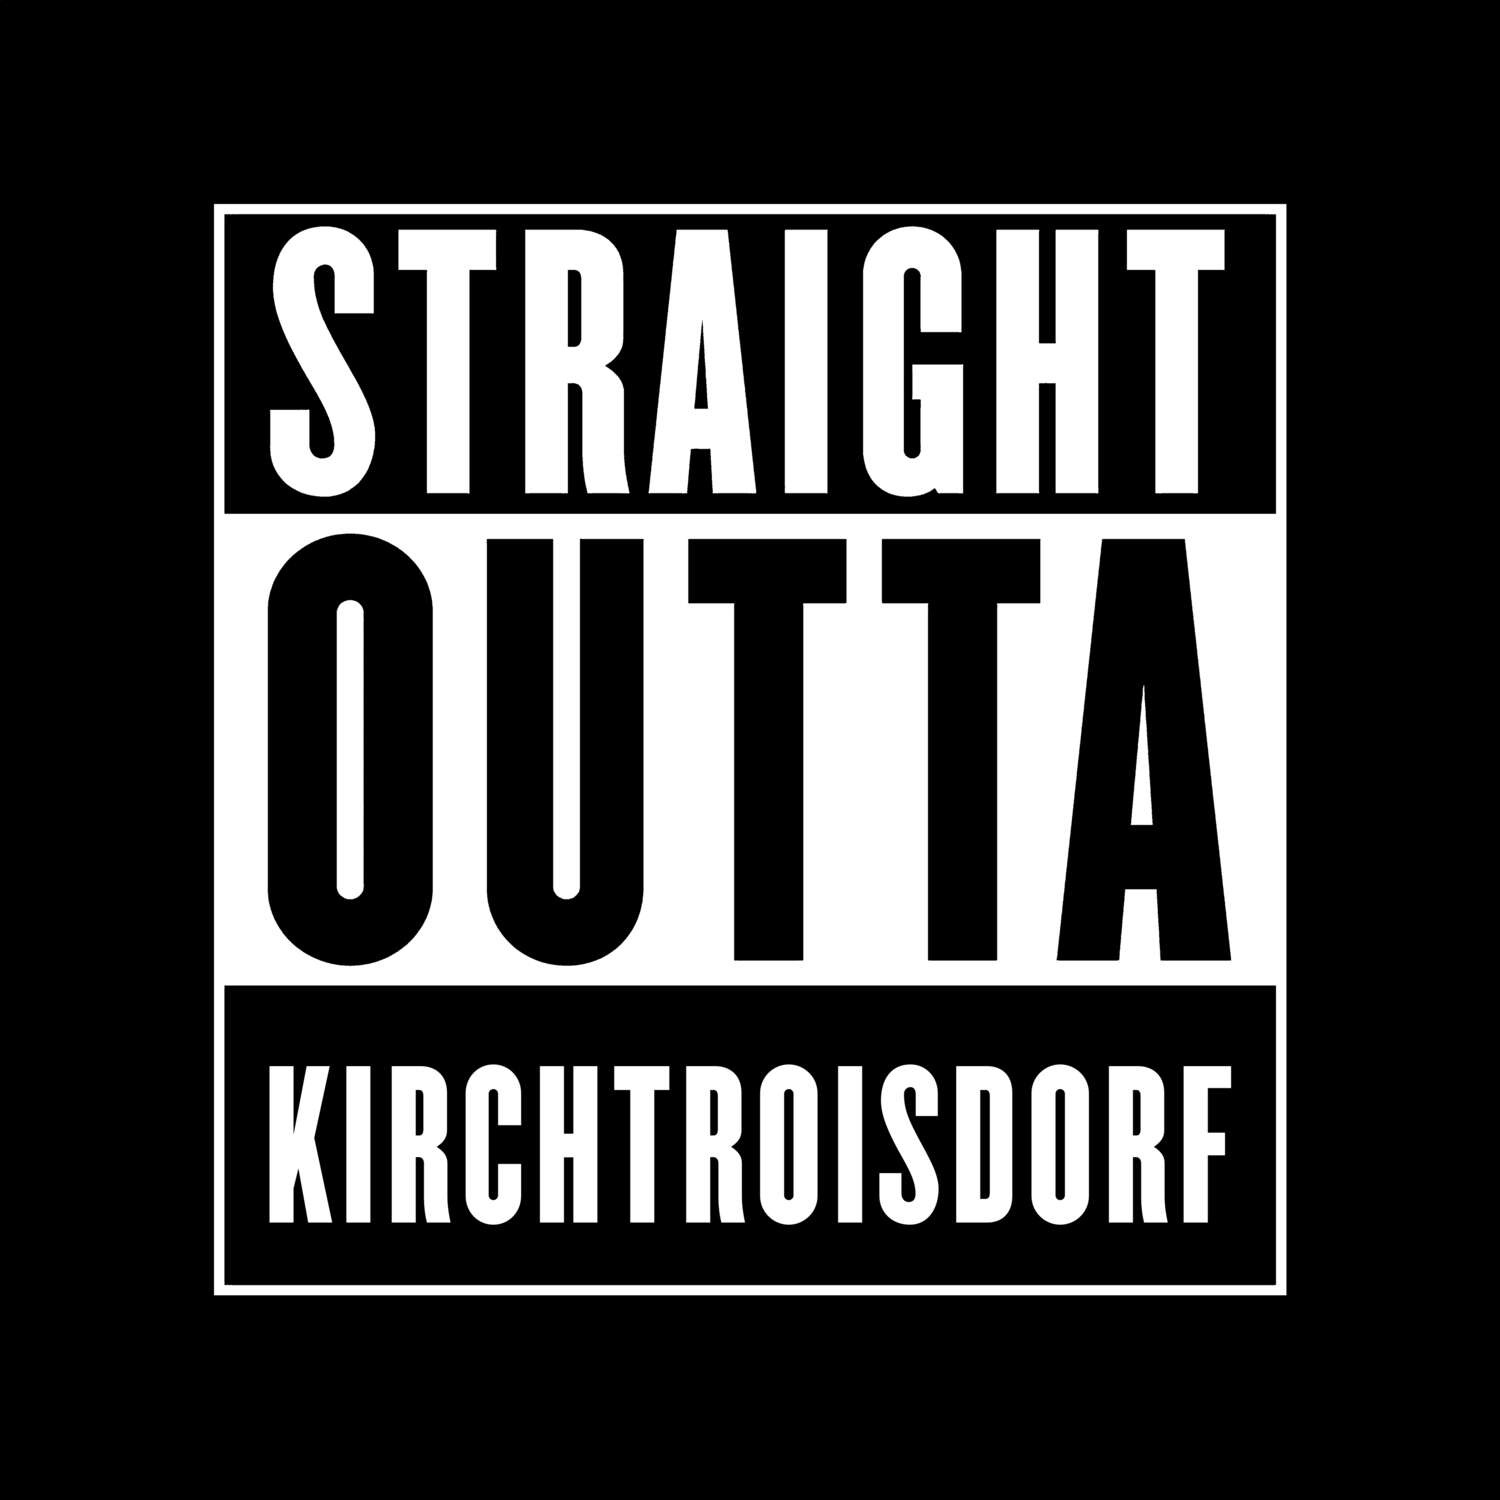 Kirchtroisdorf T-Shirt »Straight Outta«